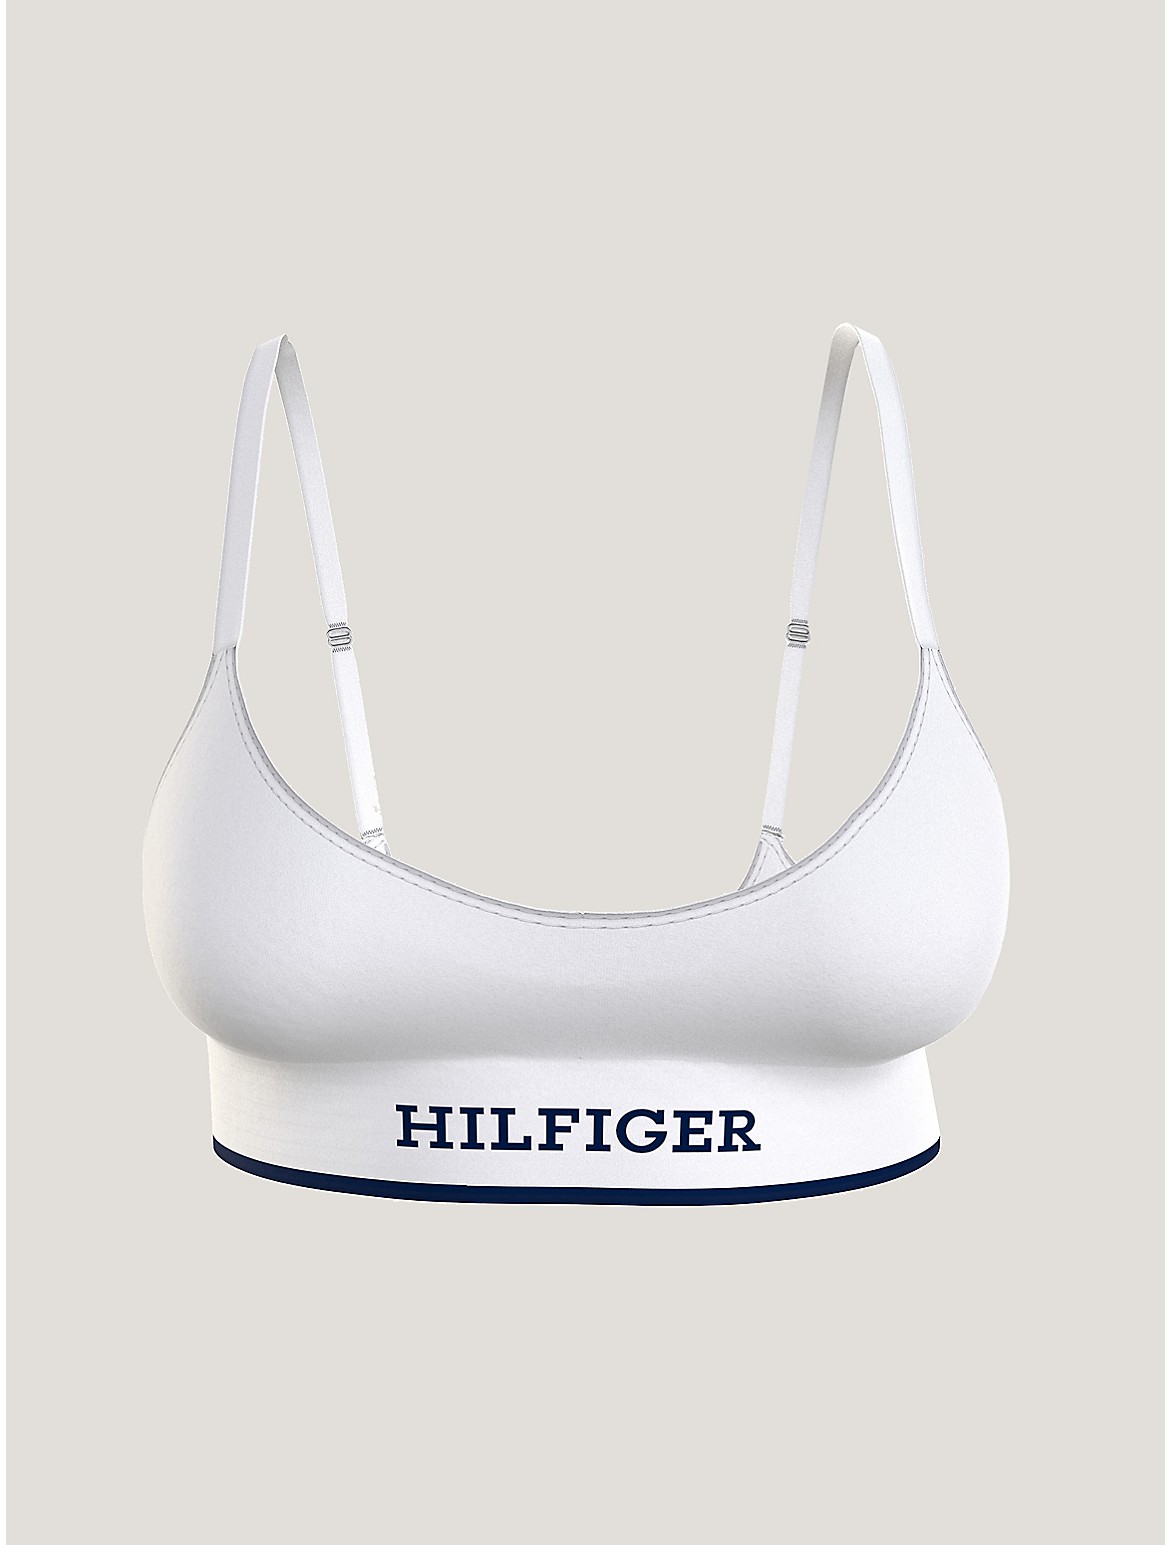 Tommy Hilfiger Women's Monotype Logo Bralette